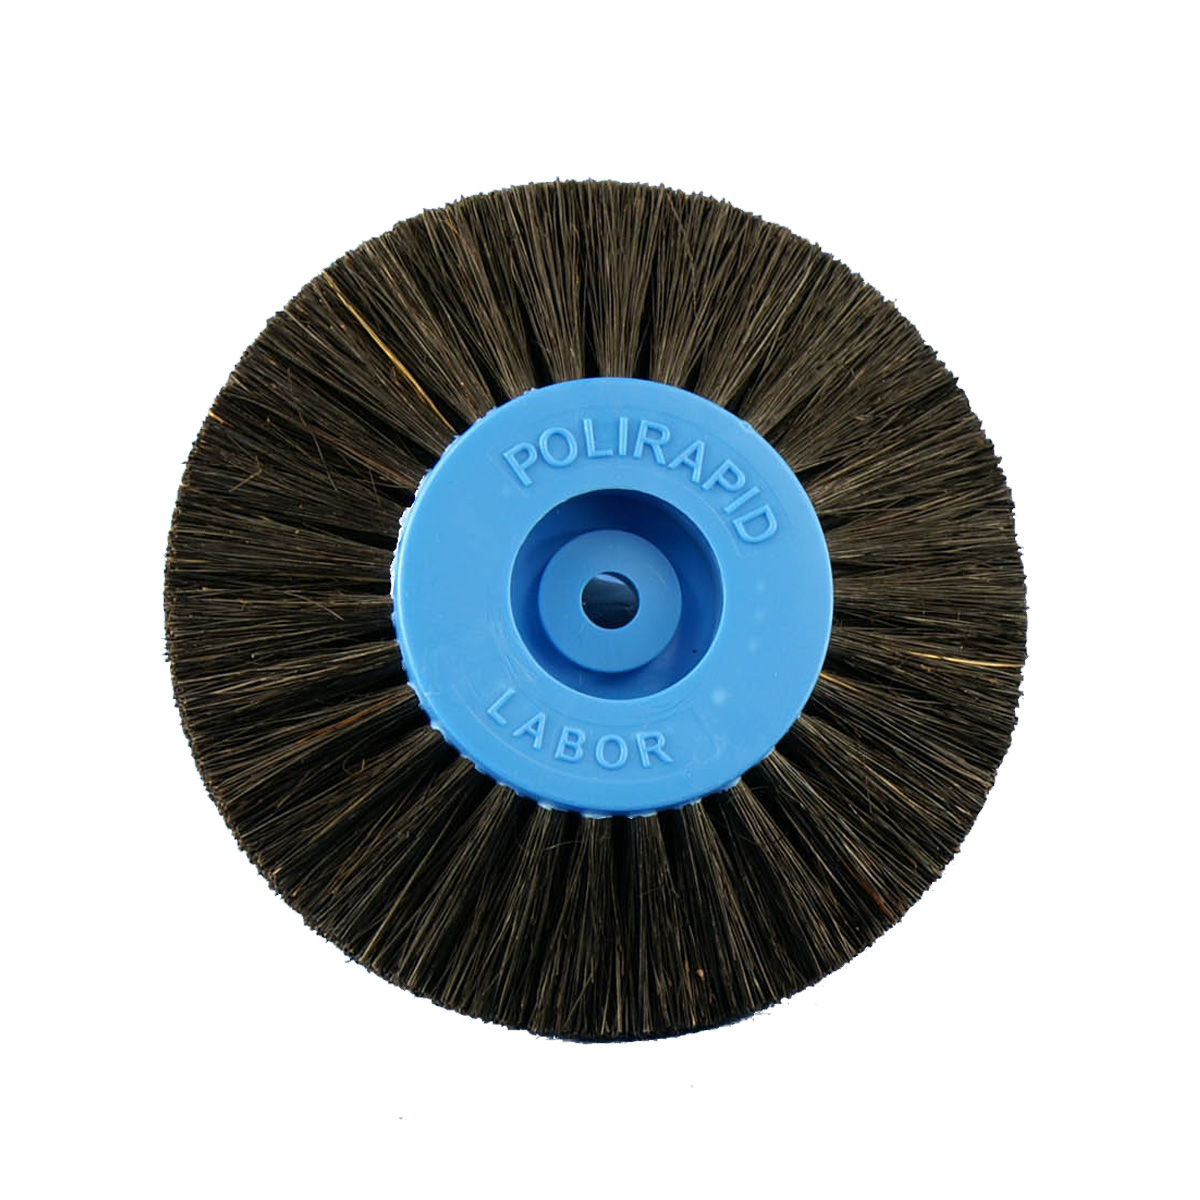 Brosse circulaire, poils noirs Chungking, 4 rangées, pointue, Ø 80 mm, avec noyau en plastique, bleu